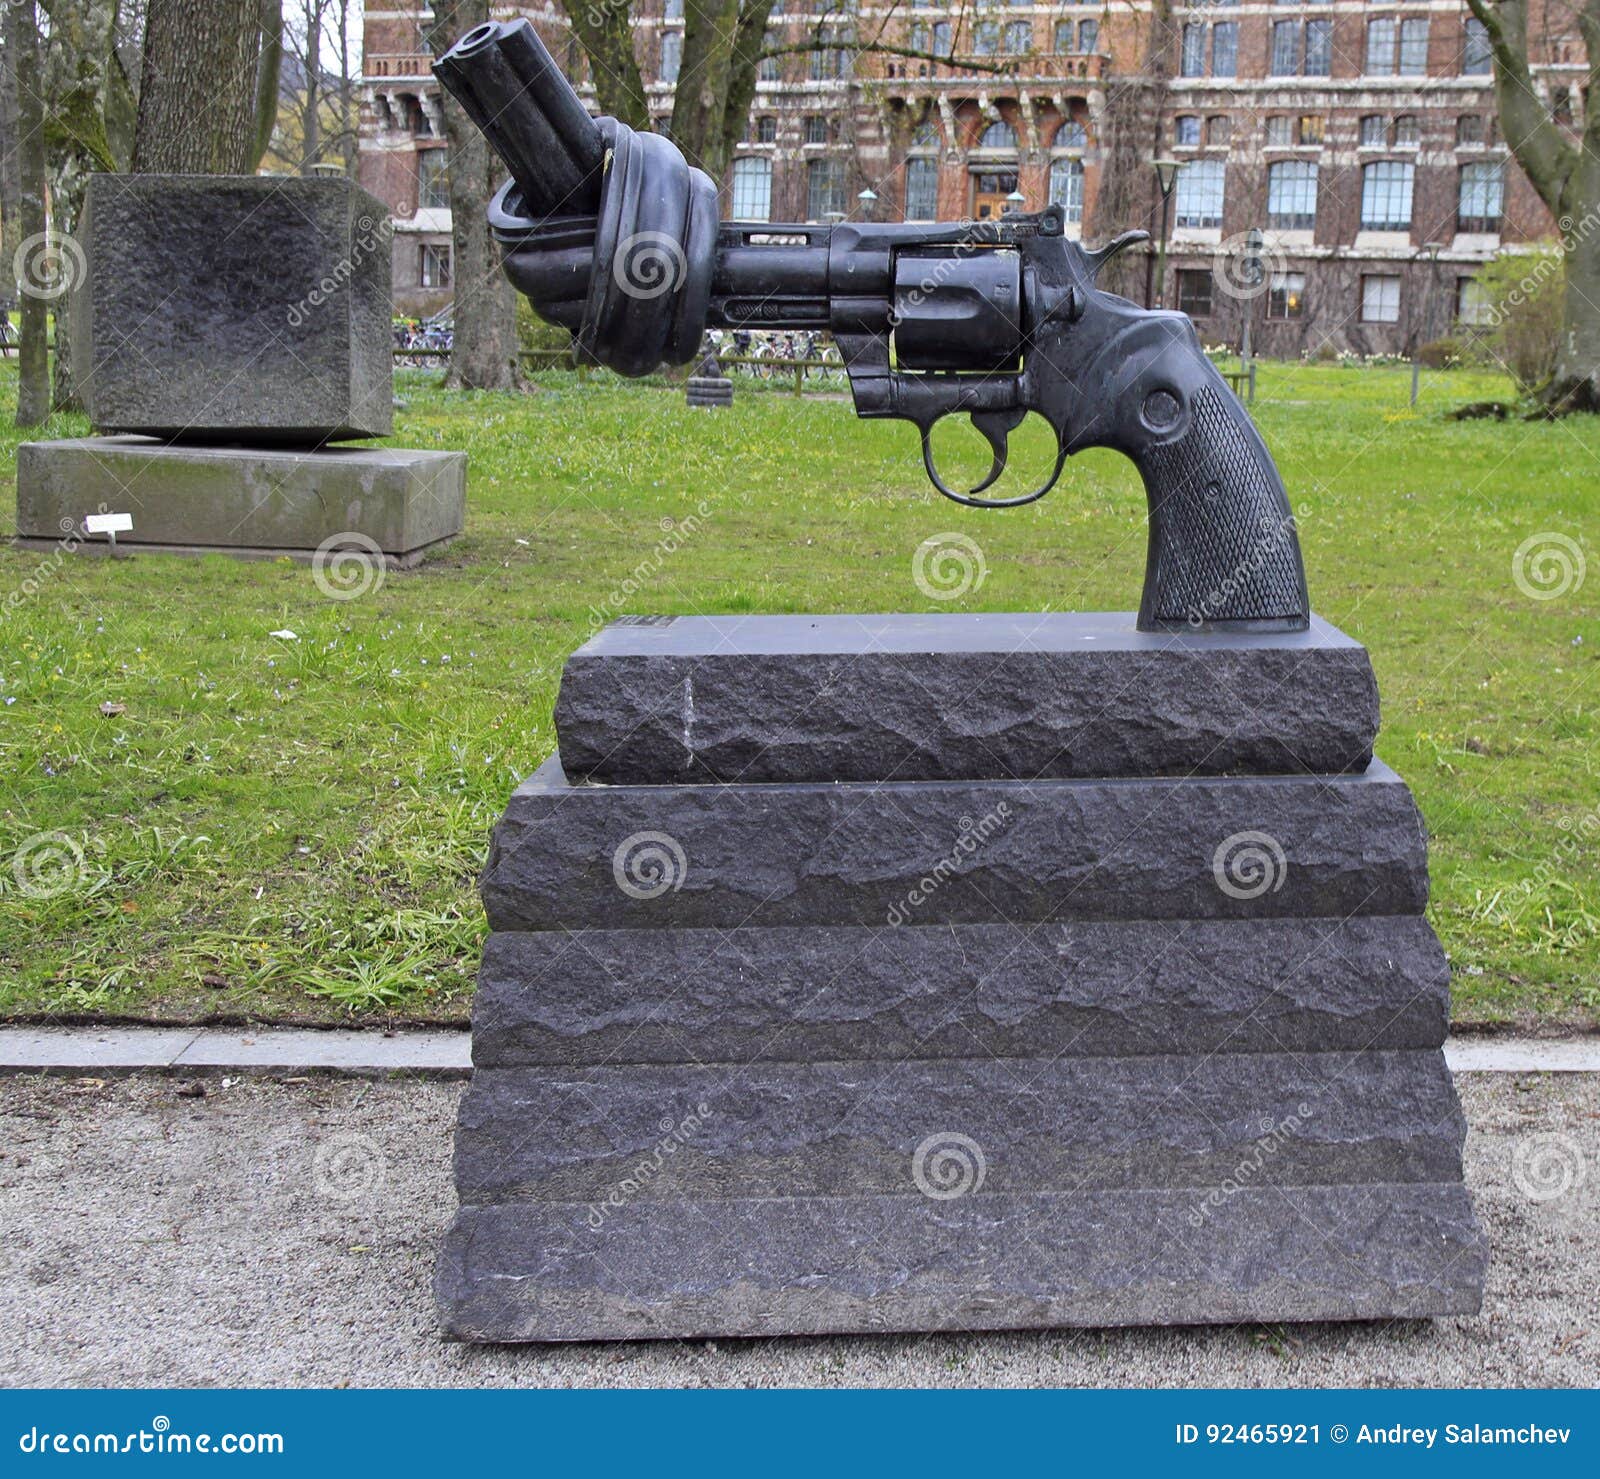 【携程攻略】马尔默打结的手枪雕塑景点,海港上也有一座舉世聞名的反戰雕塑：打結的手槍。这里纽约联合国大楼…